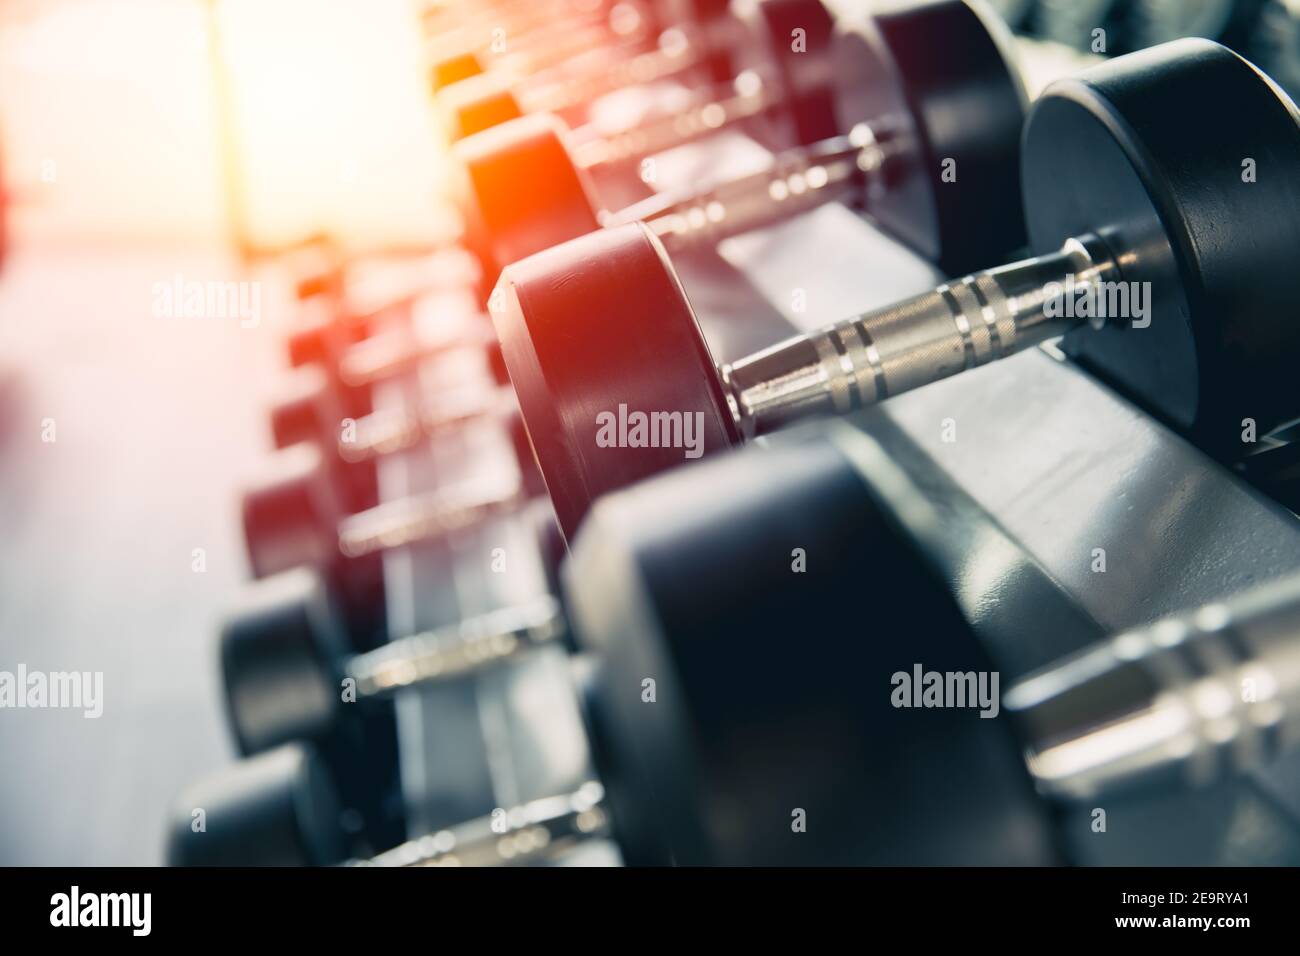 Pesa mancuerna para el entrenamiento muscular en gimnasio fitness club, tiro de cerca Foto de stock